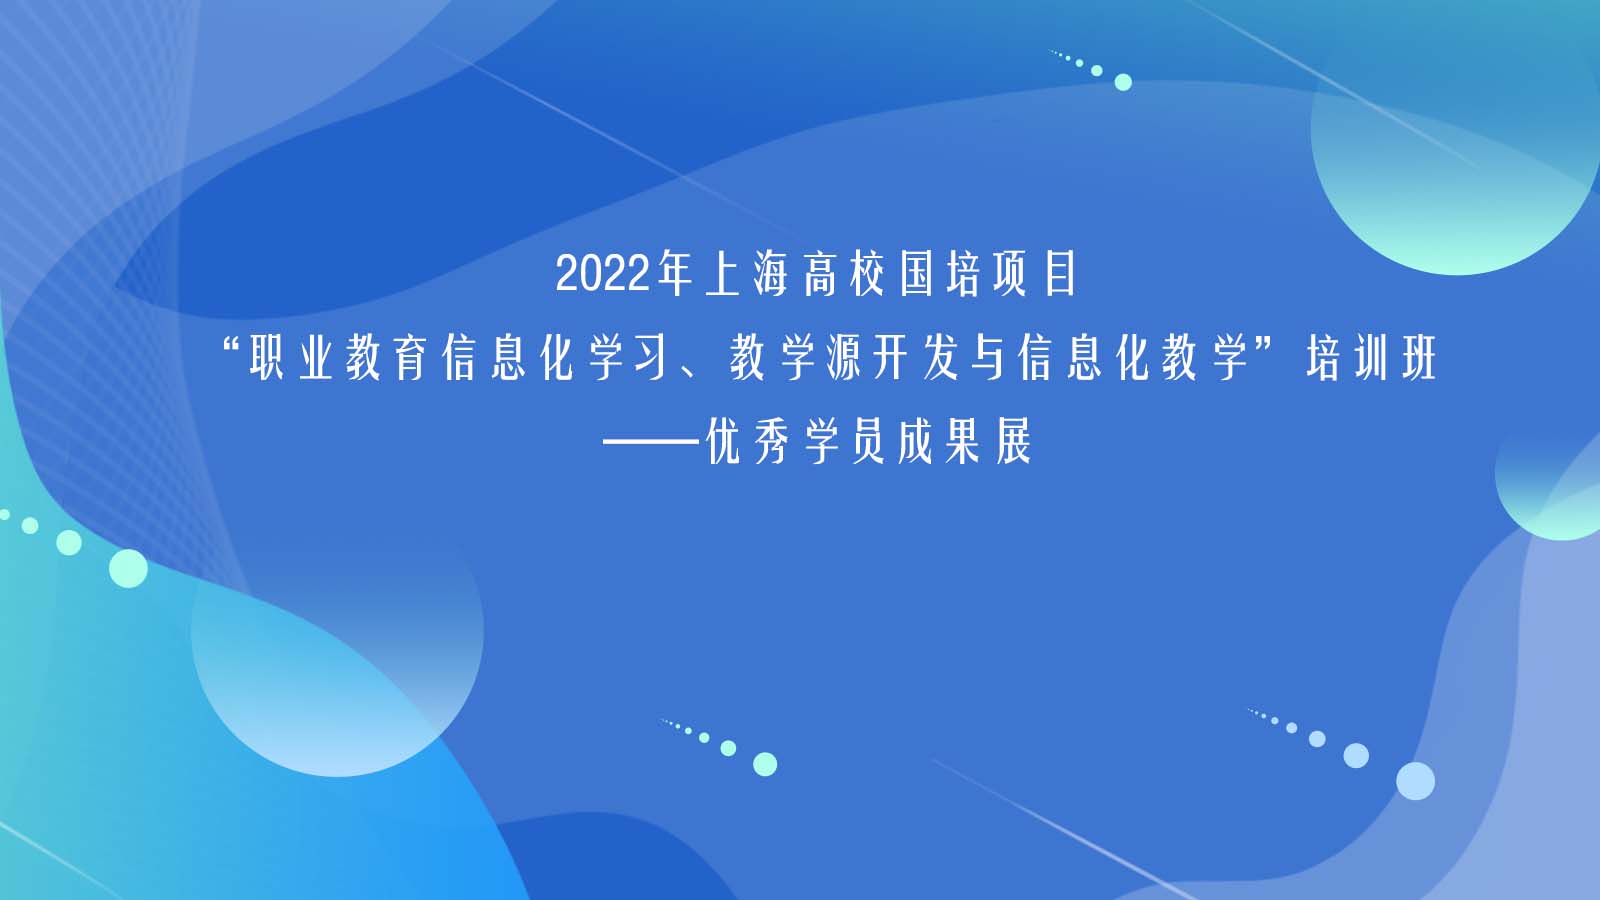 2022年上海高校国培项目-优秀学员成果展